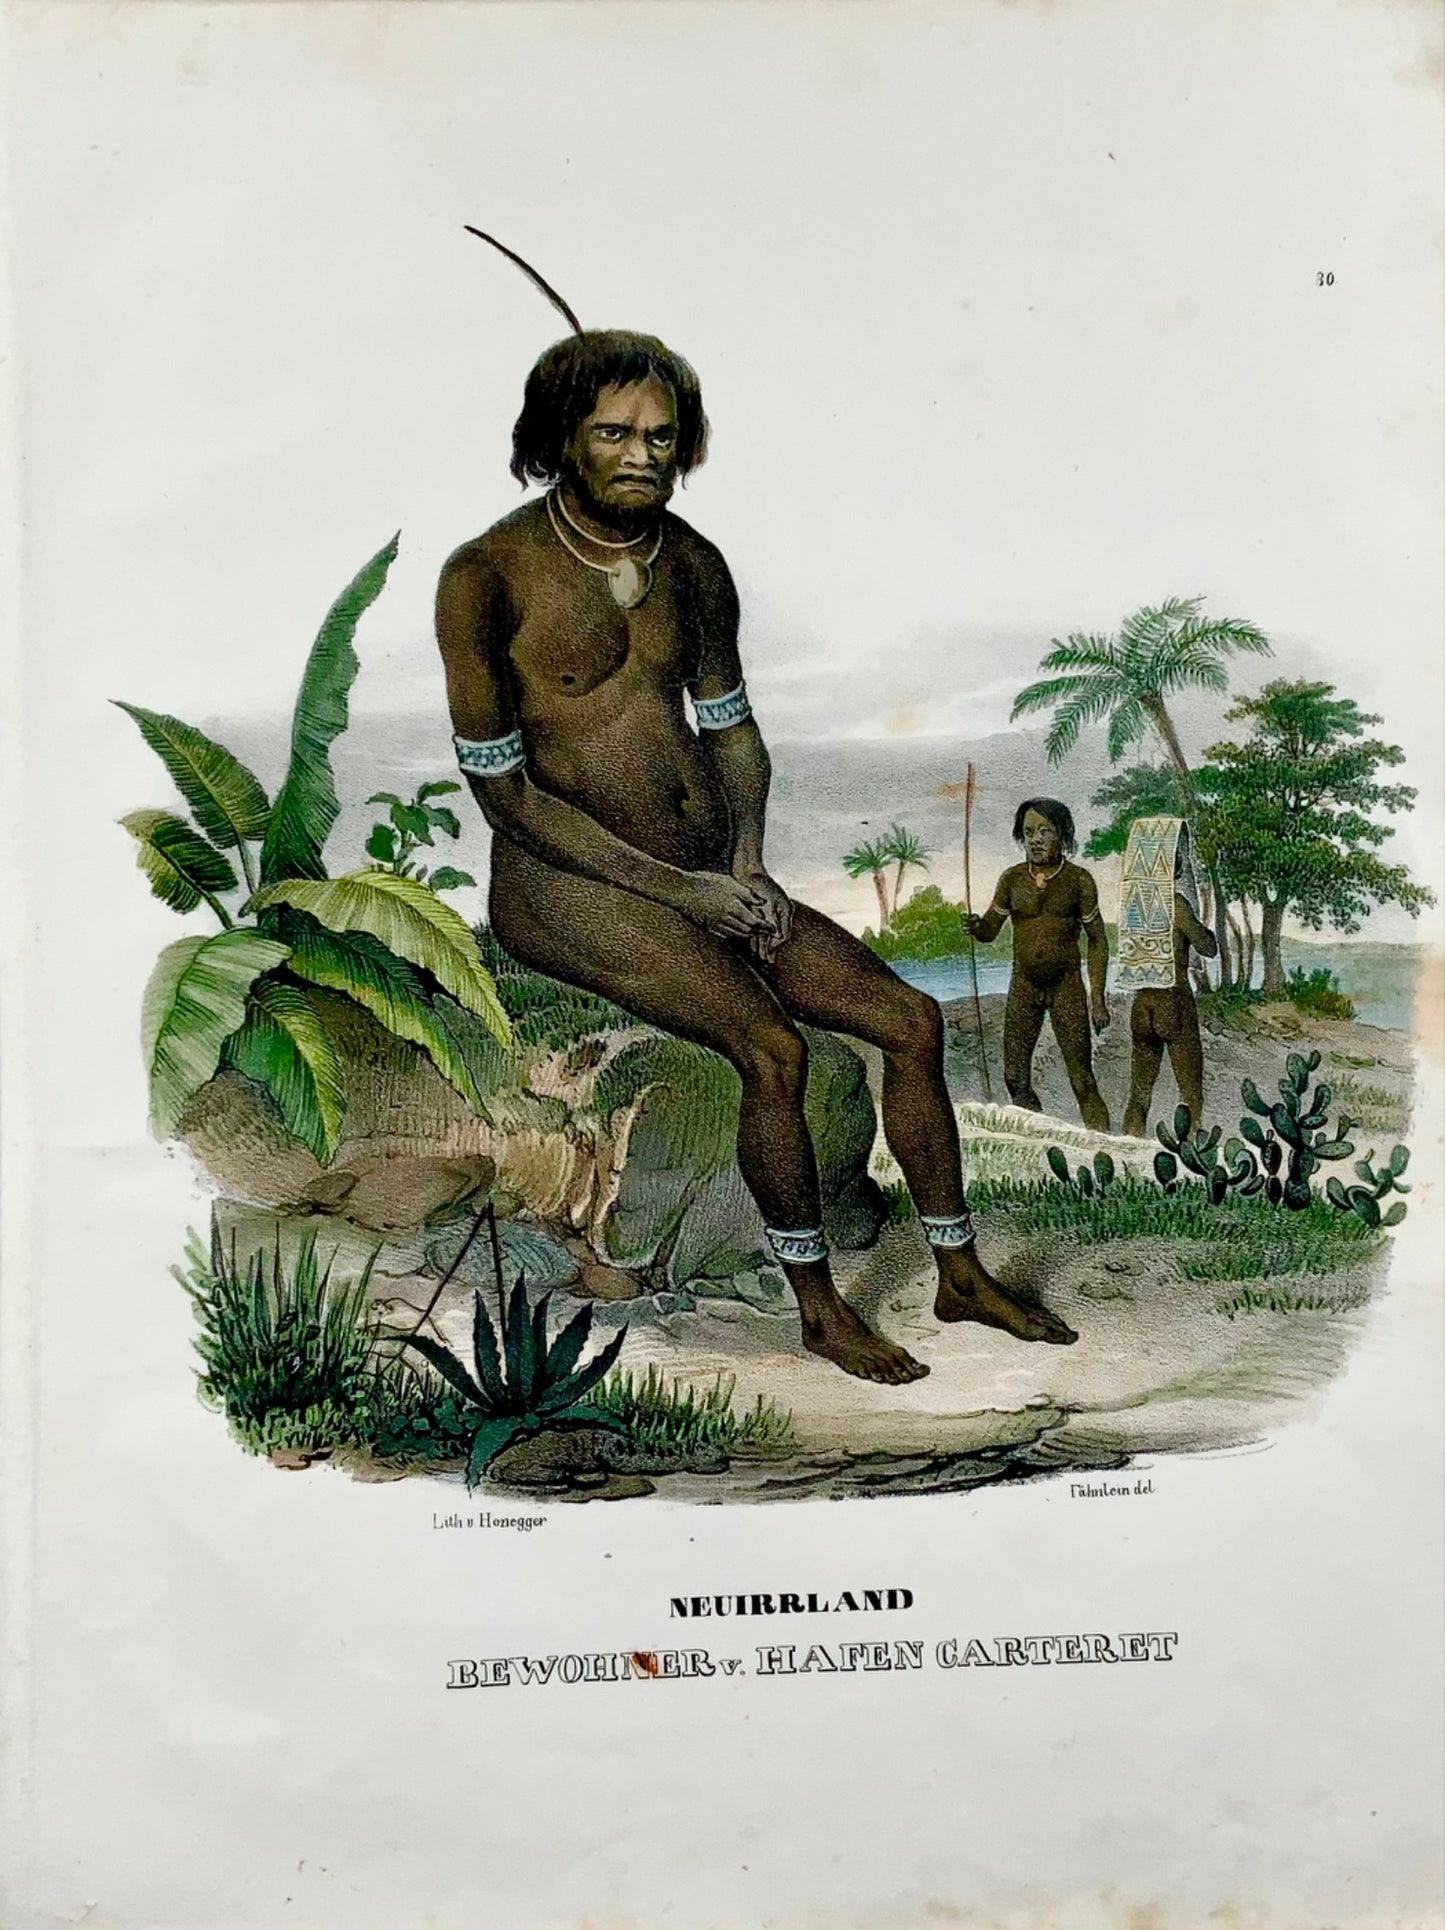 1840 Indigènes de Papouasie-Neuguinea, Honegger, lithographie sur pierre folio colorée à la main